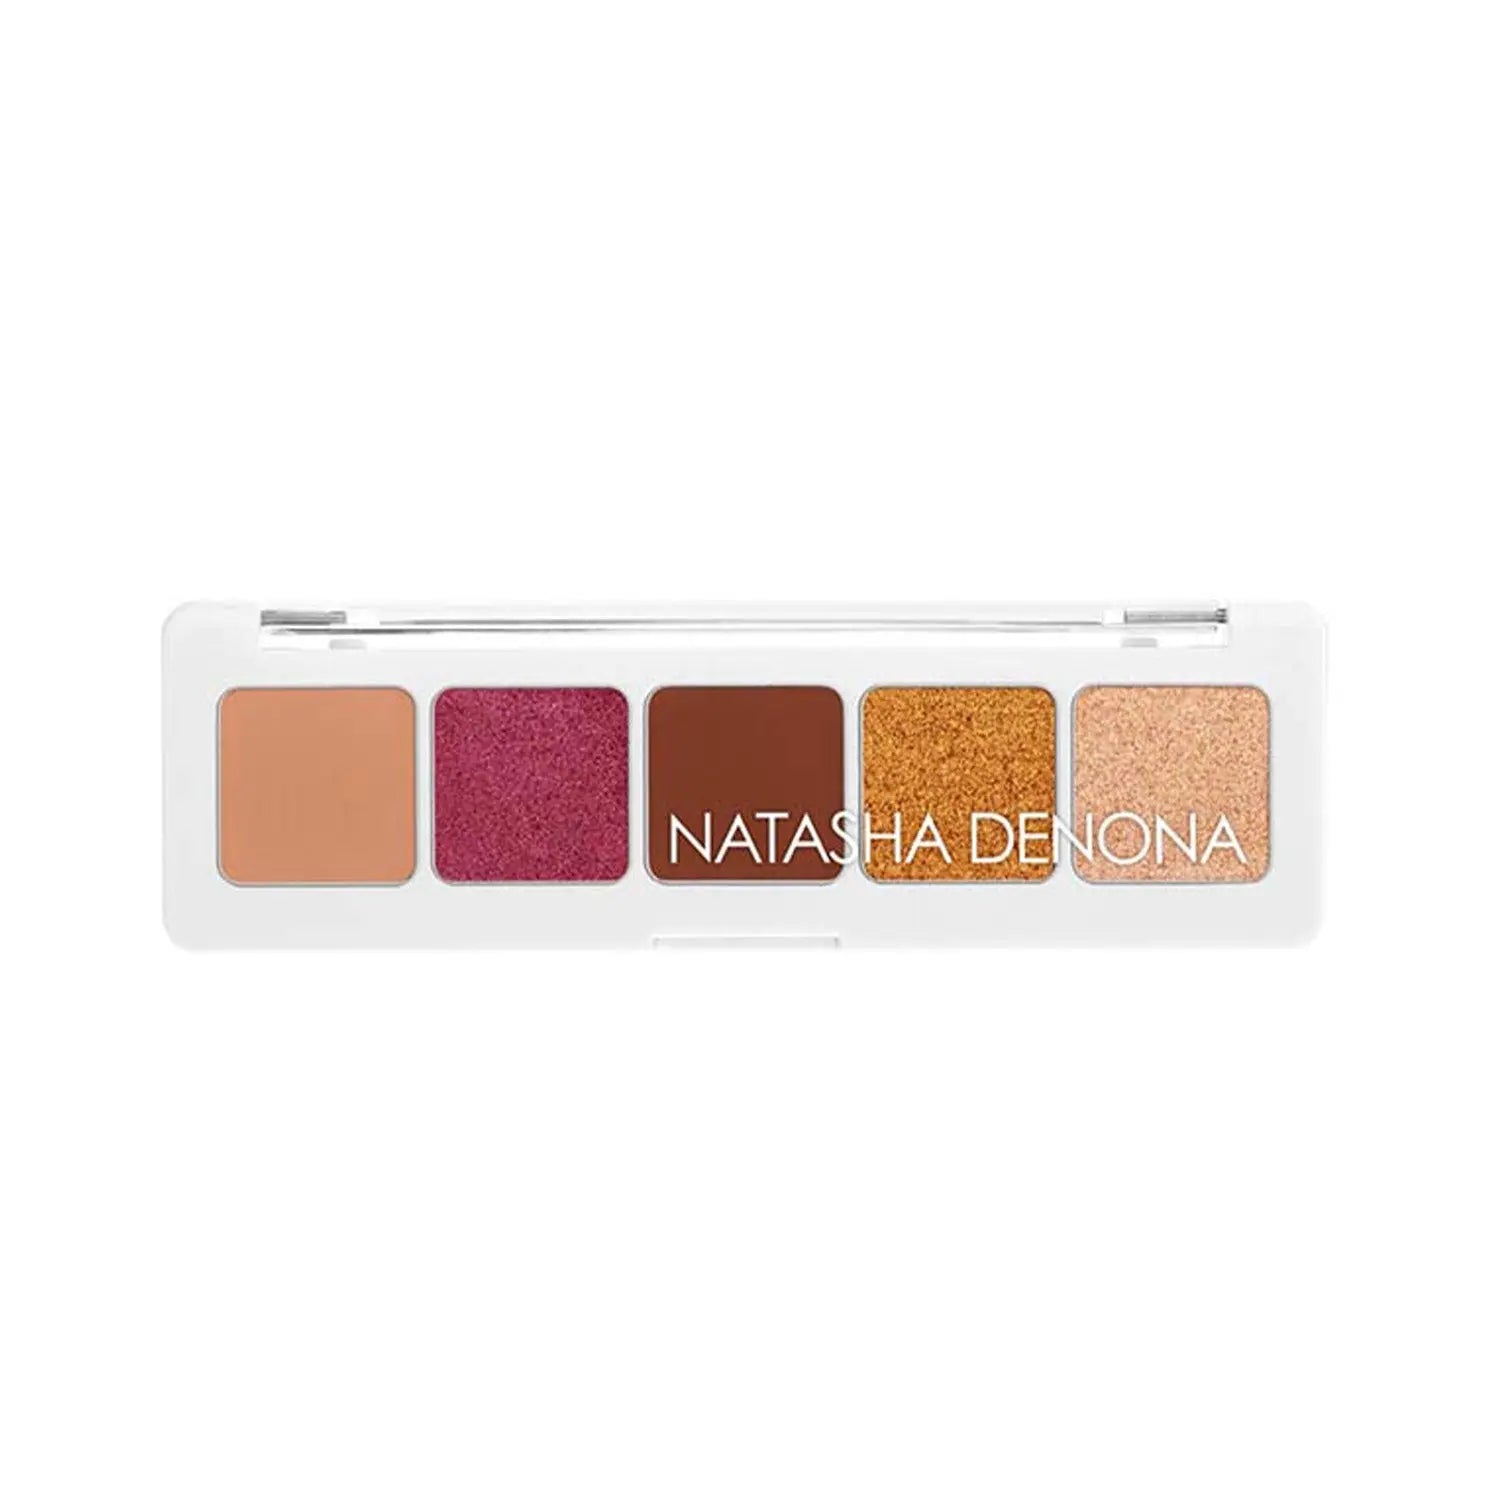 Mini Sunset eyeshadow Palette - פלטת צלליות לעיניים מיני סאנסט Natasha Denona